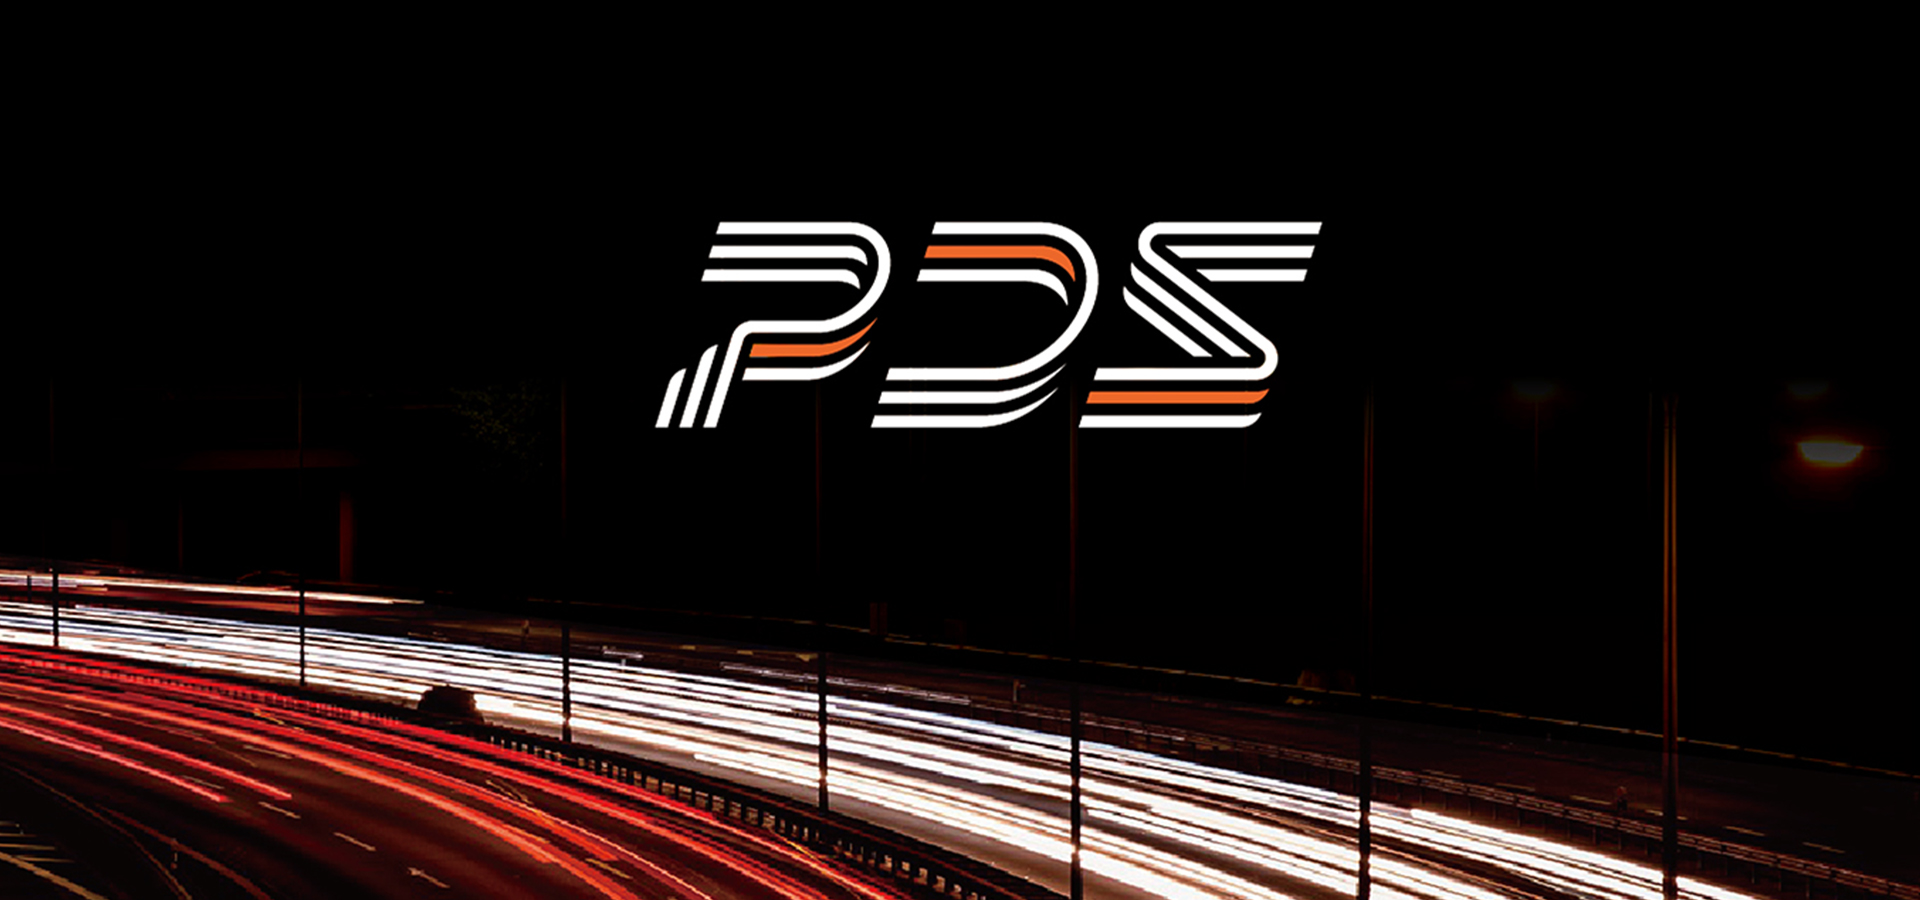 PDS small banner | 震江電力品牌再造專案 | Labsology 法博思品牌顧問公司